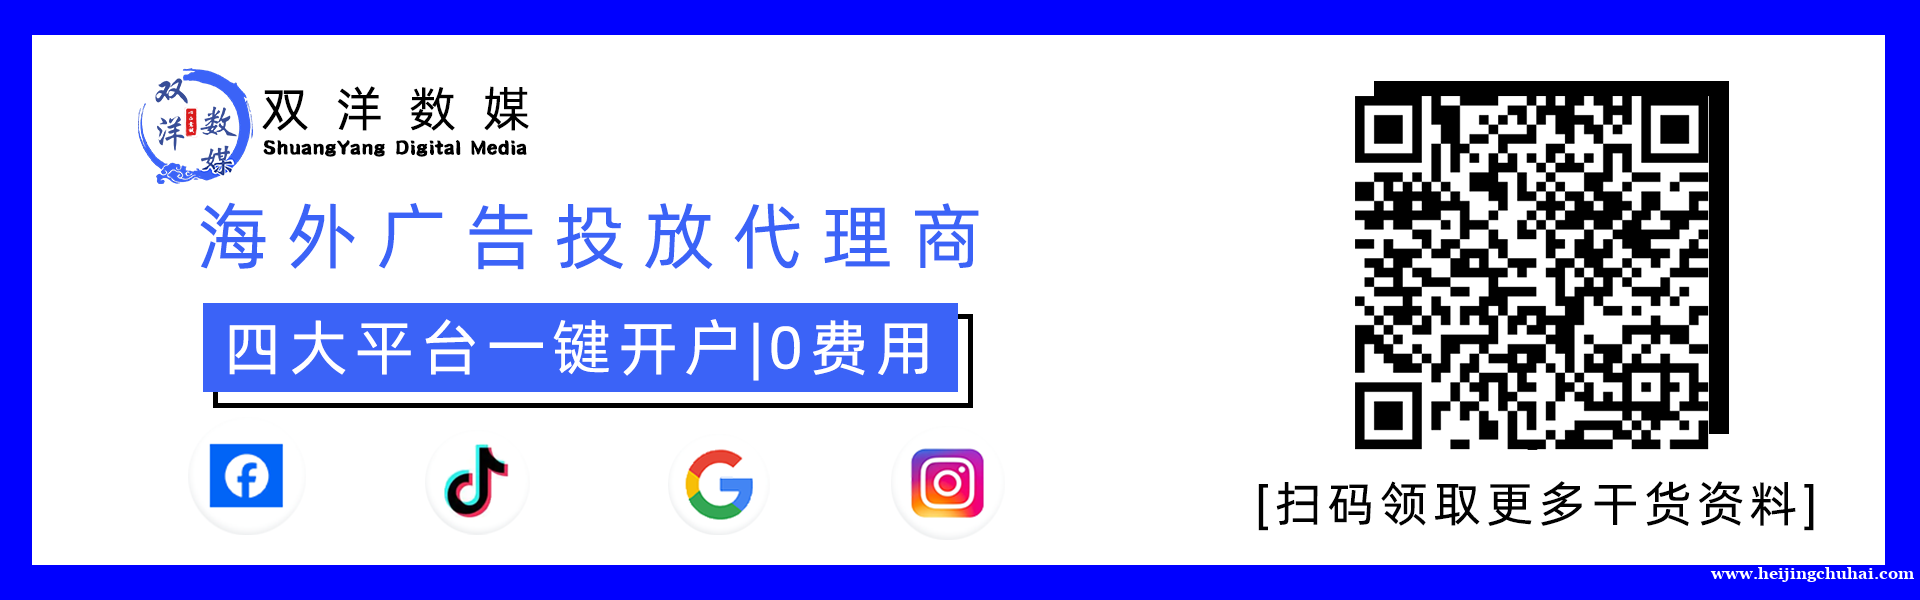 【双洋数媒】 提供facebook/tk/gg广告开户代投